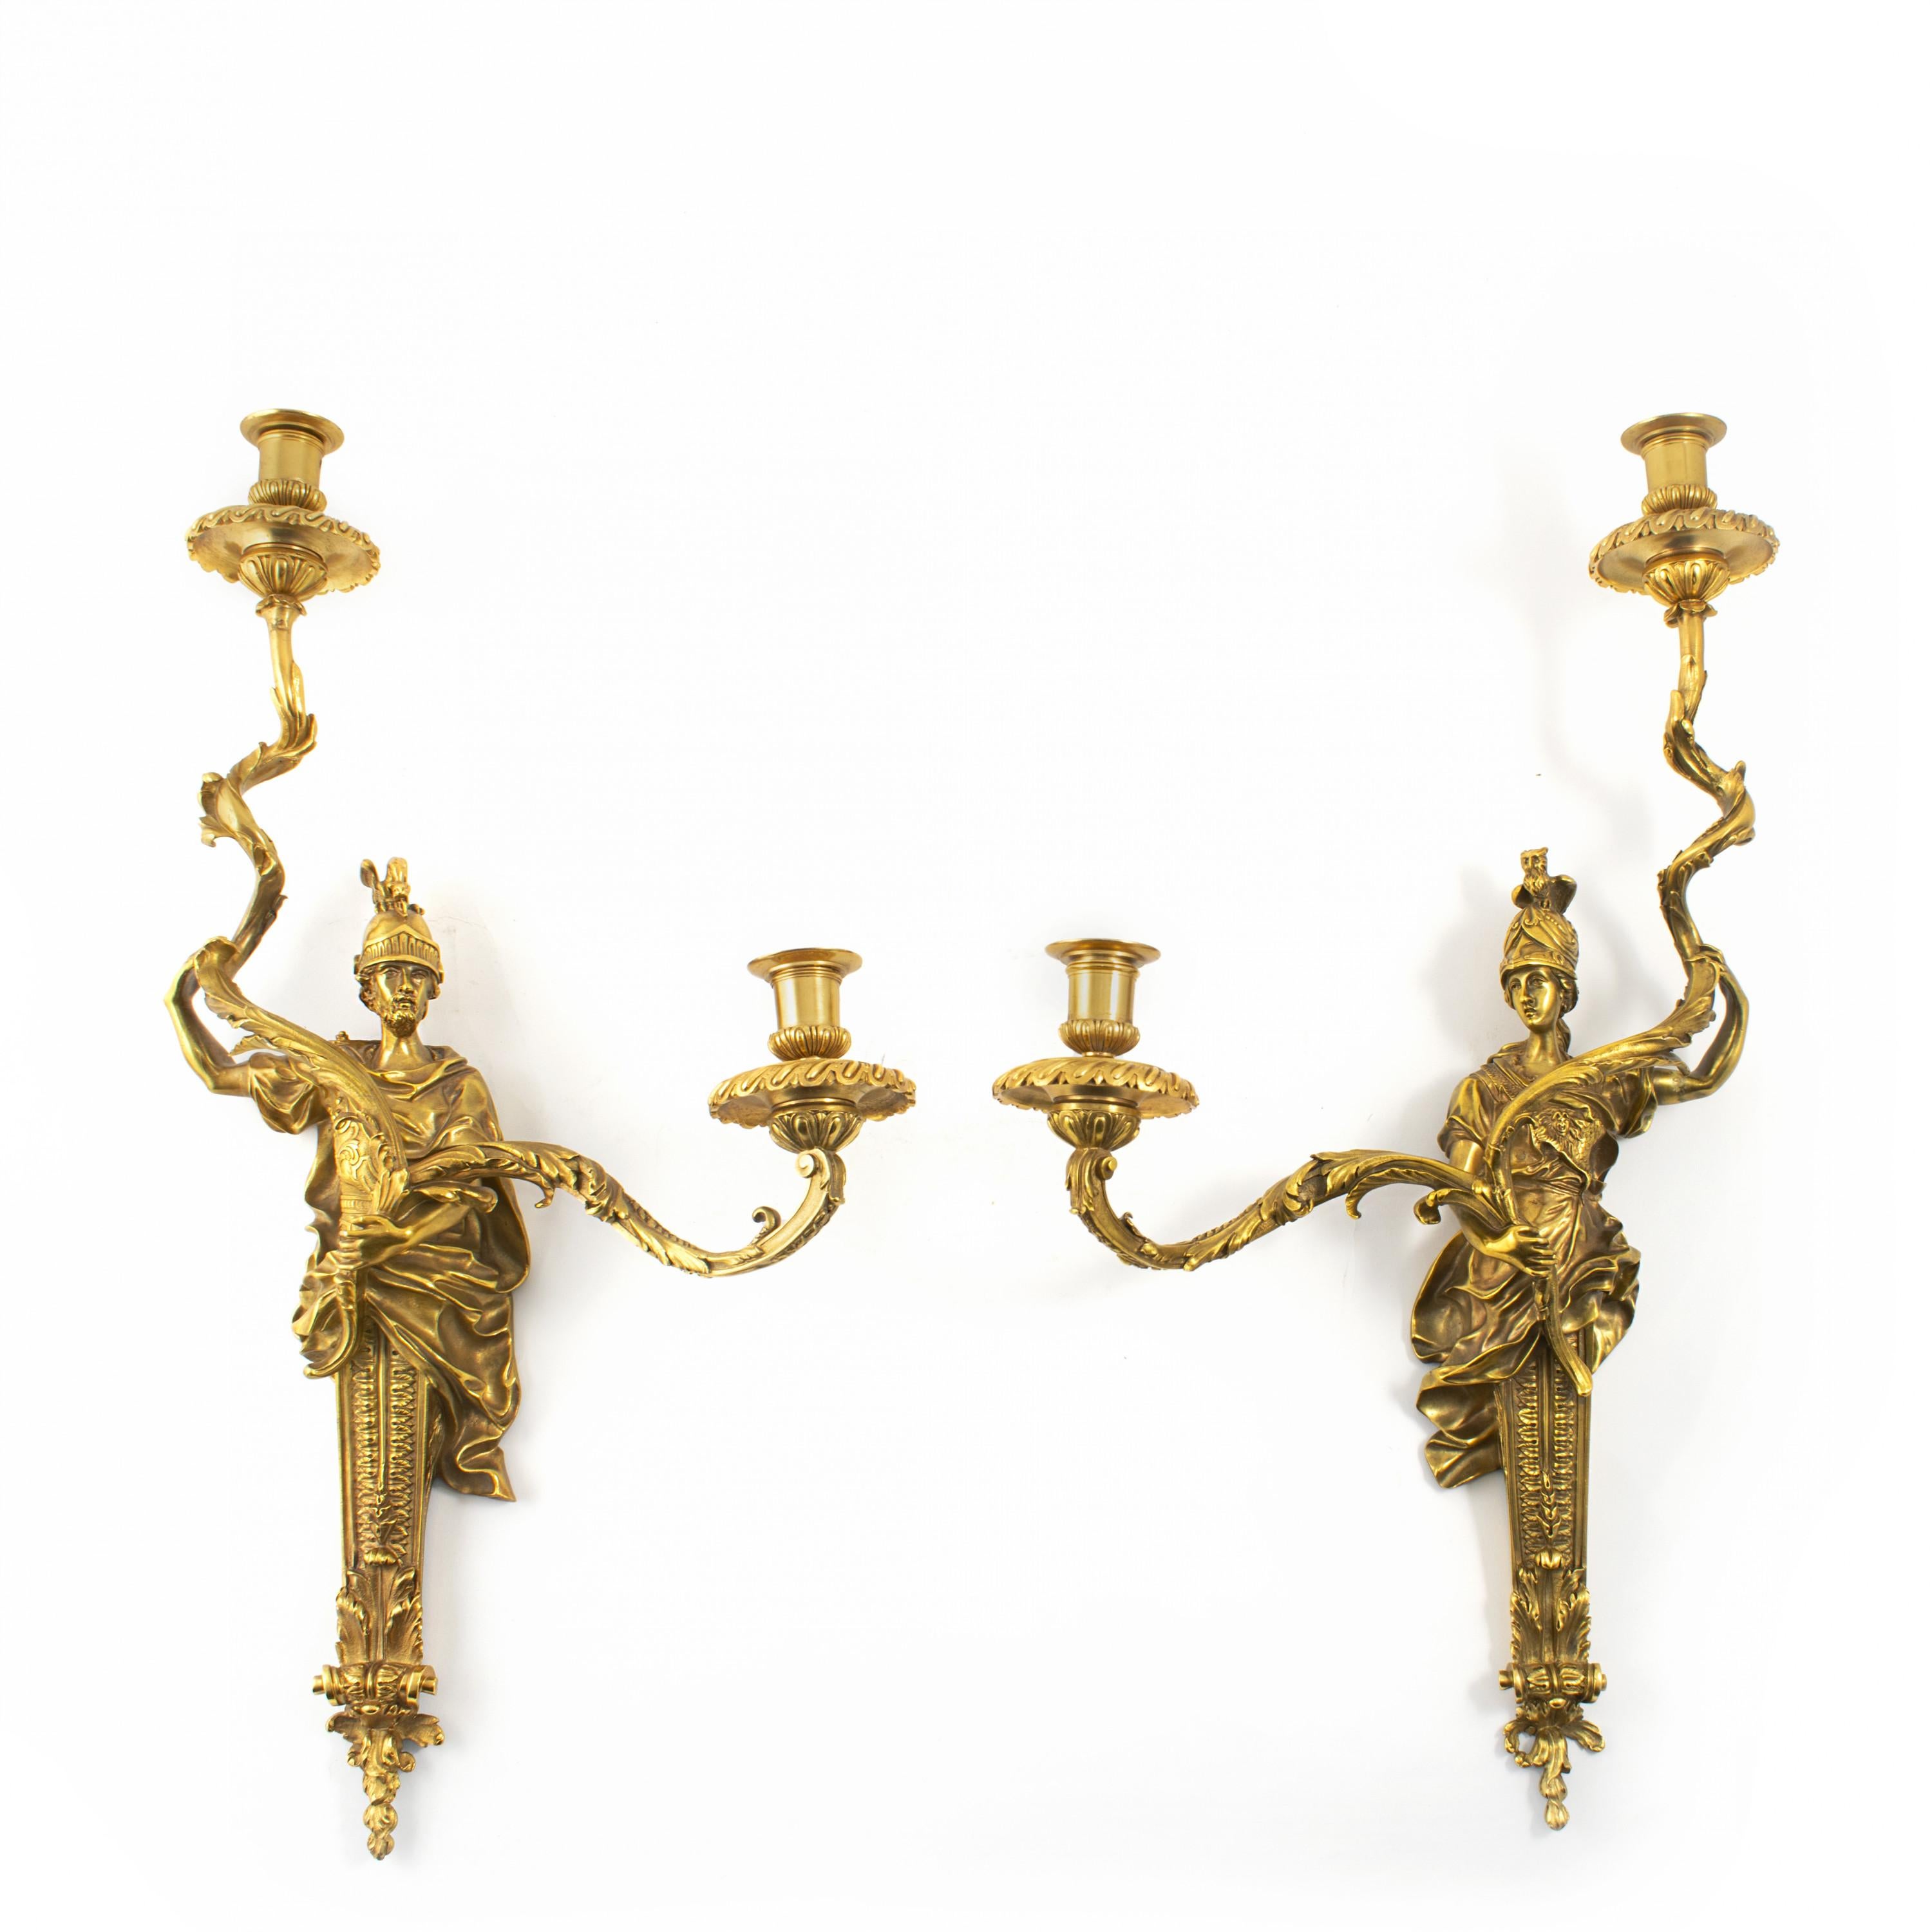 Un ensemble raffiné de quatre appliques en bronze doré de style Louis XVI.
Fabriqué en France à la fin du XIXe siècle par Henri Viane.
Très haute qualité.

Chacune est équipée de deux lumières maintenues par une sculpture en bronze.

Dimensions :